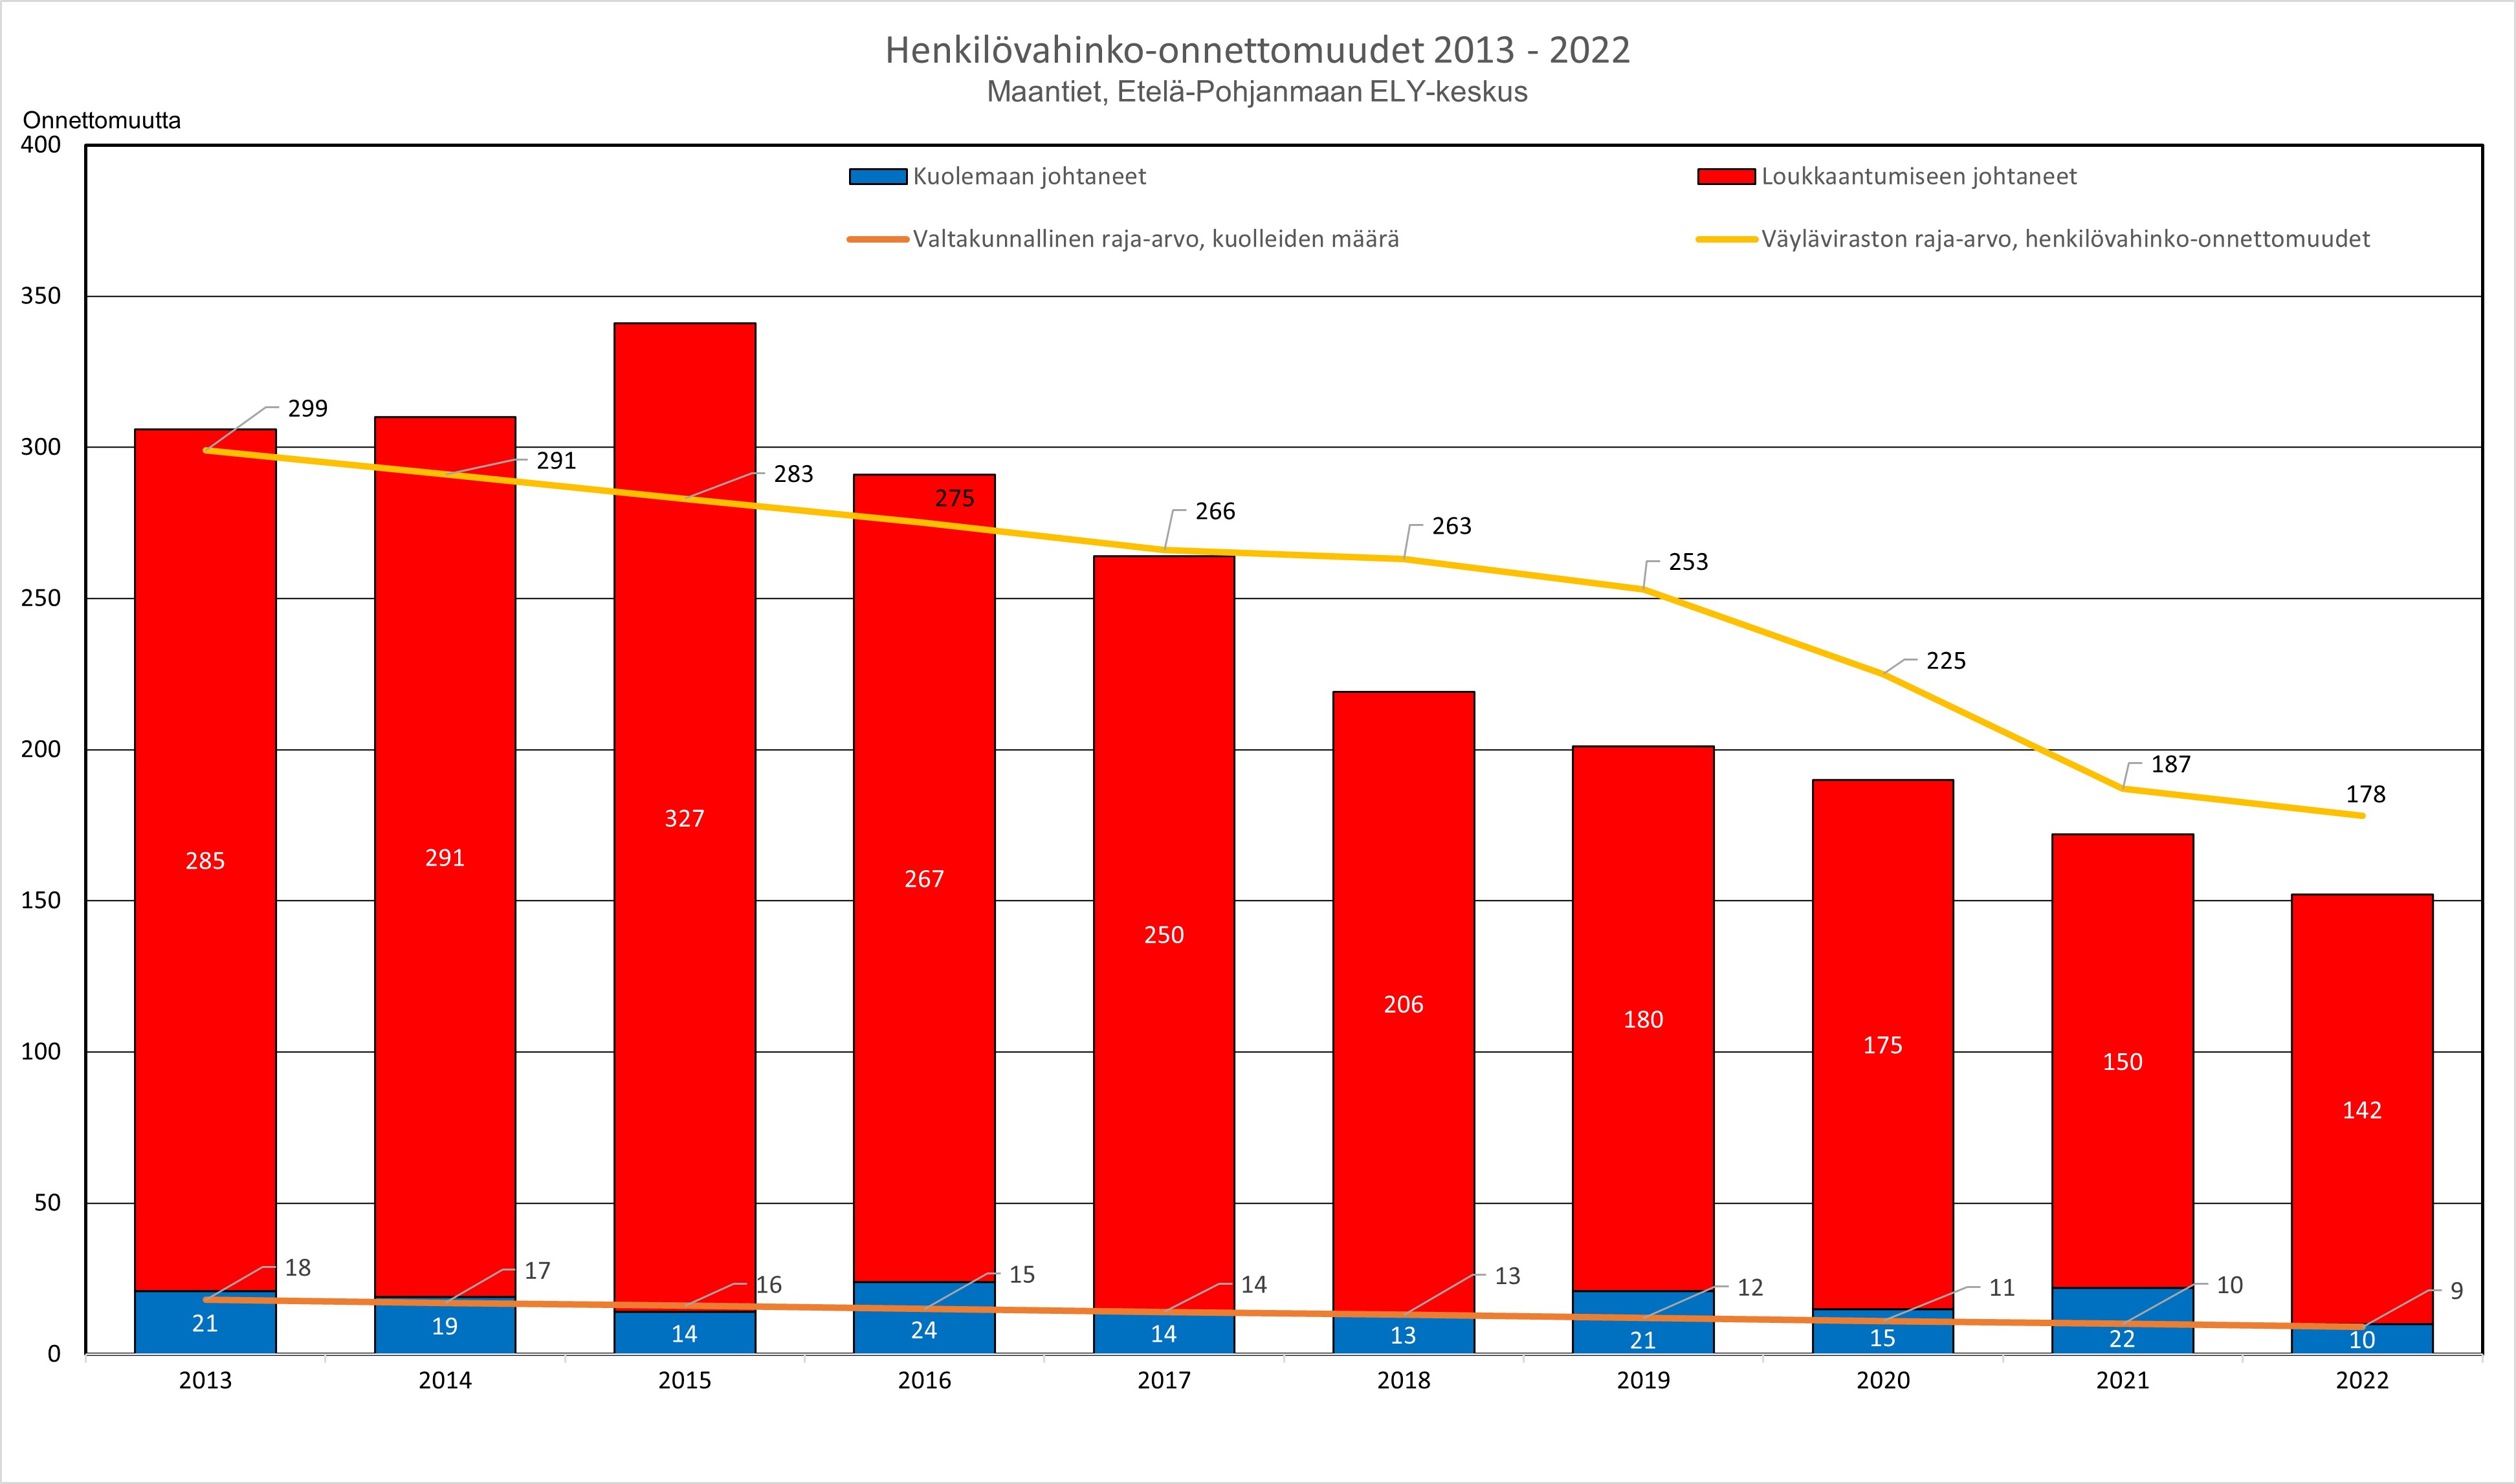 Kuva 5. Henkilövahinko-onnettomuudet vuosina 2013–2022, maantiet Etelä-Pohjanmaan ELY- keskus. Henkilövahinko-onnettomuudet ovat vähentyneet vuoden 2013 määrästä 306 kpl vuoden 2022 määrään 152 kpl. Väyläviraston asettama raja-arvo vuodelle 2022 oli 178 kpl. Kuolemaan johtaneiden onnettomuuksien määrä on vähentynyt 3–4 vuoden aikavälein, kunnes ne taas ovat lisääntyneet. Kuolemien osalta pahimmat vuodet ovat olleet 2013, 2016, 2019 ja 2021. Vuonna 2016 tapahtui 24 kpl kuolemaan johtanutta onnettomuutta, vähiten kuolemaan johtaneita onnettomuuksia tapahtui vuonna 2022 yhteensä 10 kpl.